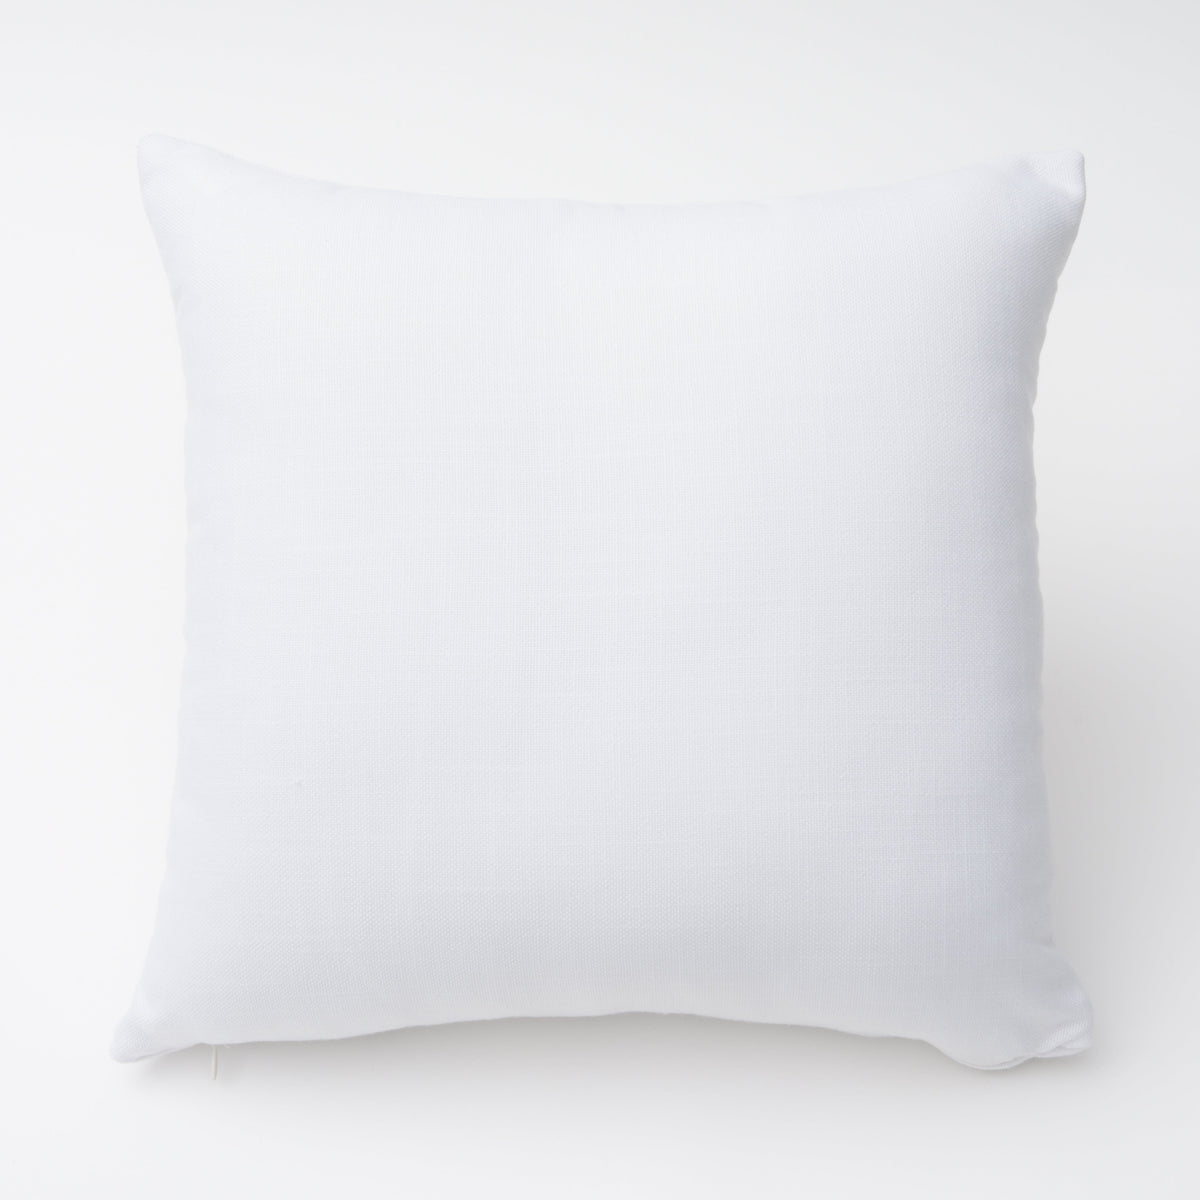 Custom Pillow Cover Gartner Studios Pillow